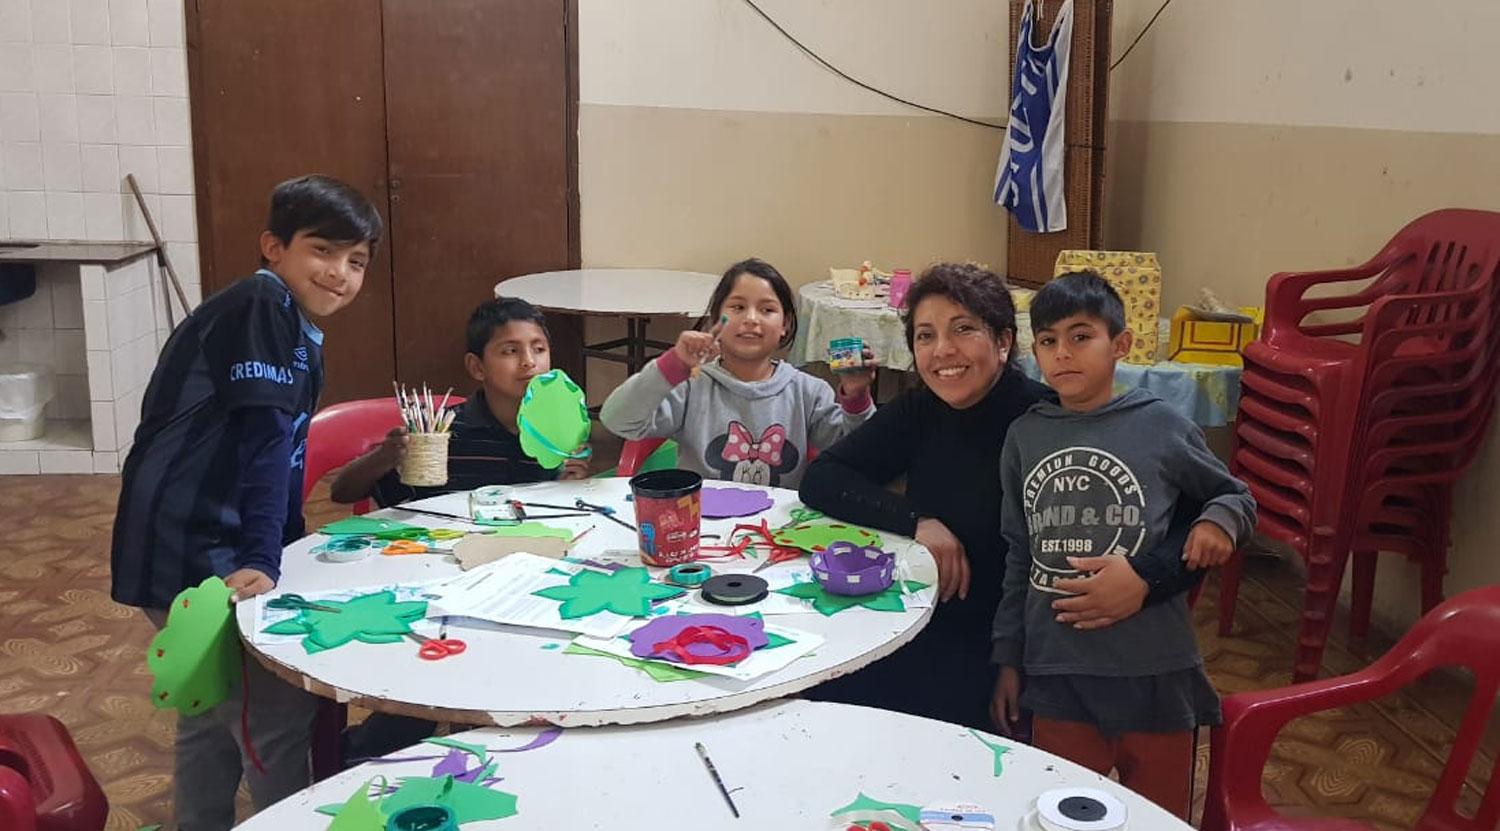 Venta solidaria: dos propuestas para colaborar con el Hogar de niños San José